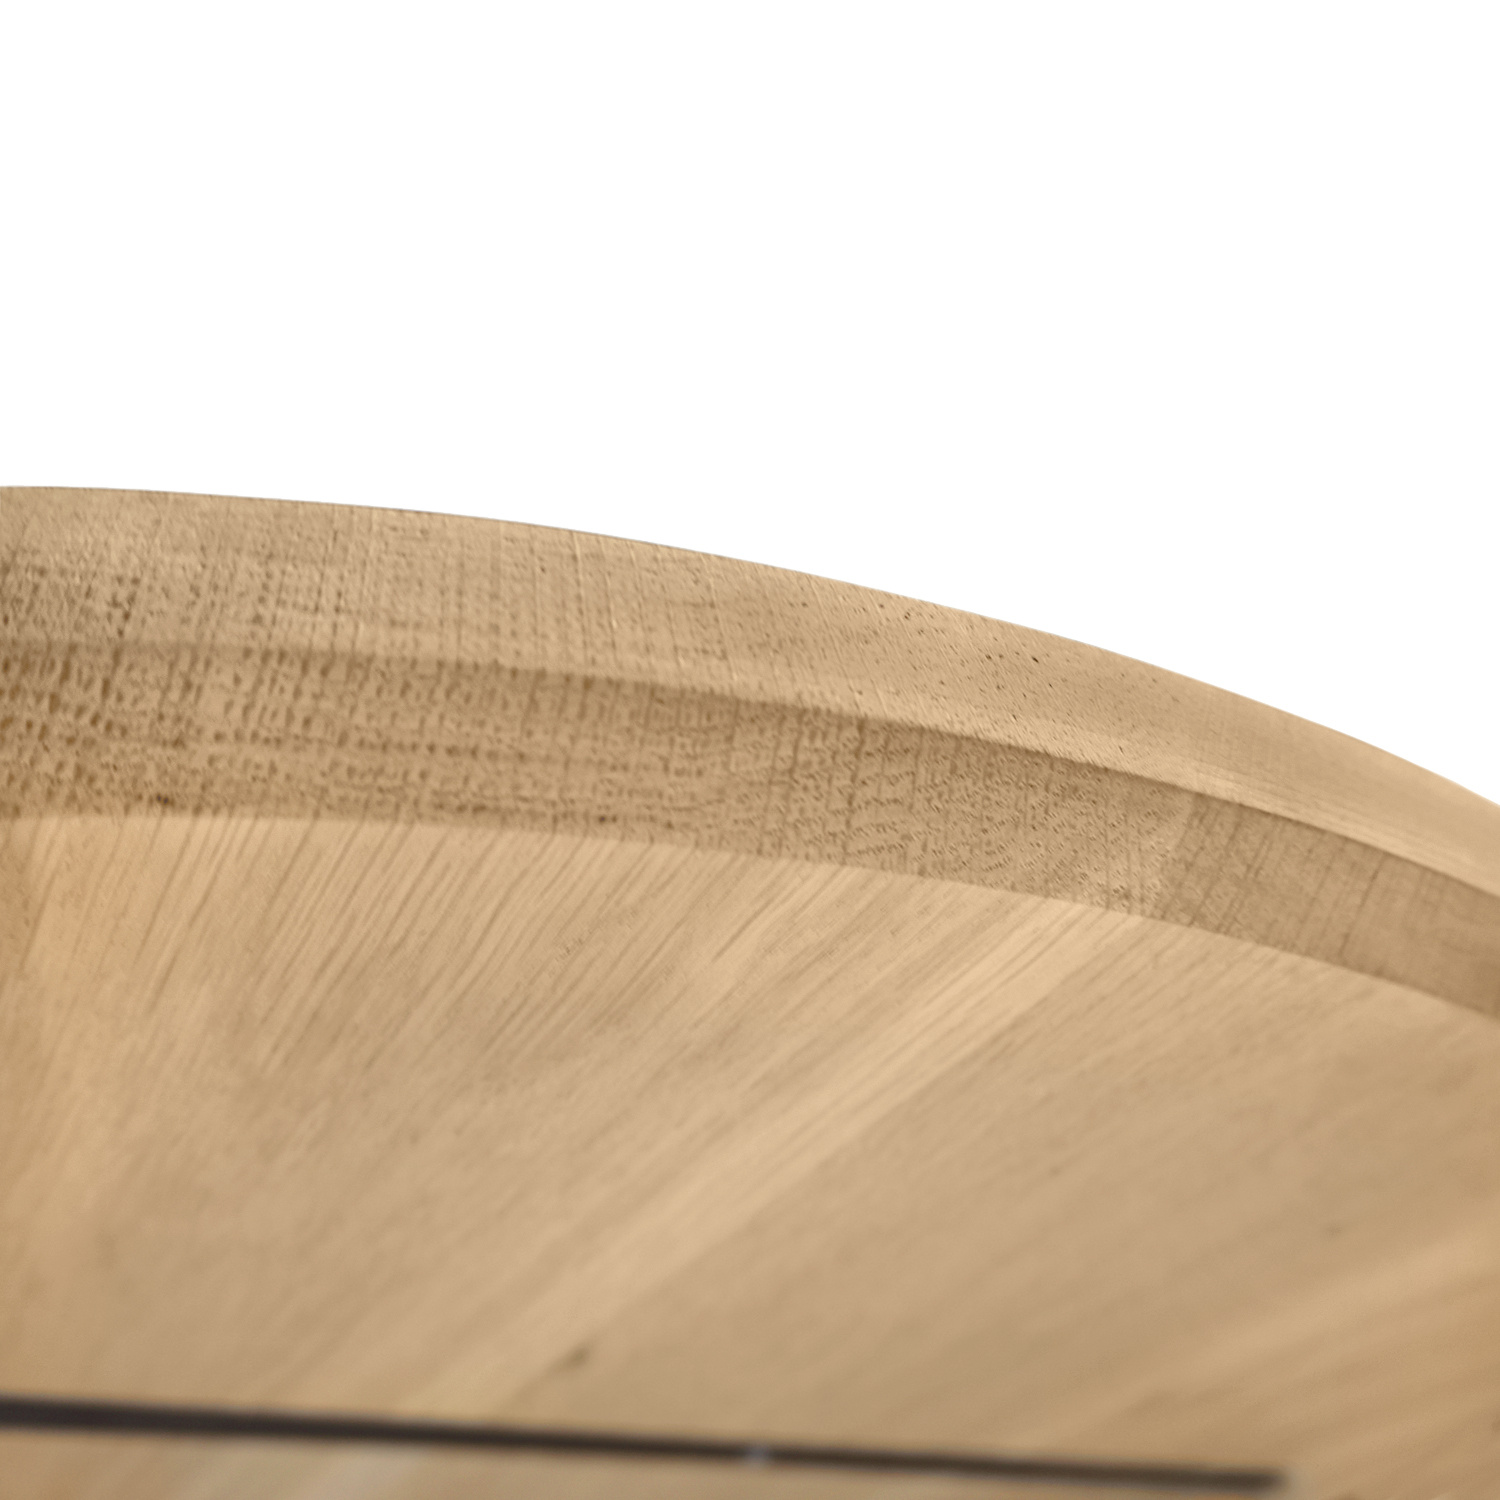  Rond eiken tafelblad op maat - 2,5 cm dik (1-laag) - extra rustiek Europees eikenhout - met extra brede lamellen (circa 14-20 cm)nhout - verlijmd kd 8-12% - diameter van 40 tot 117 cm